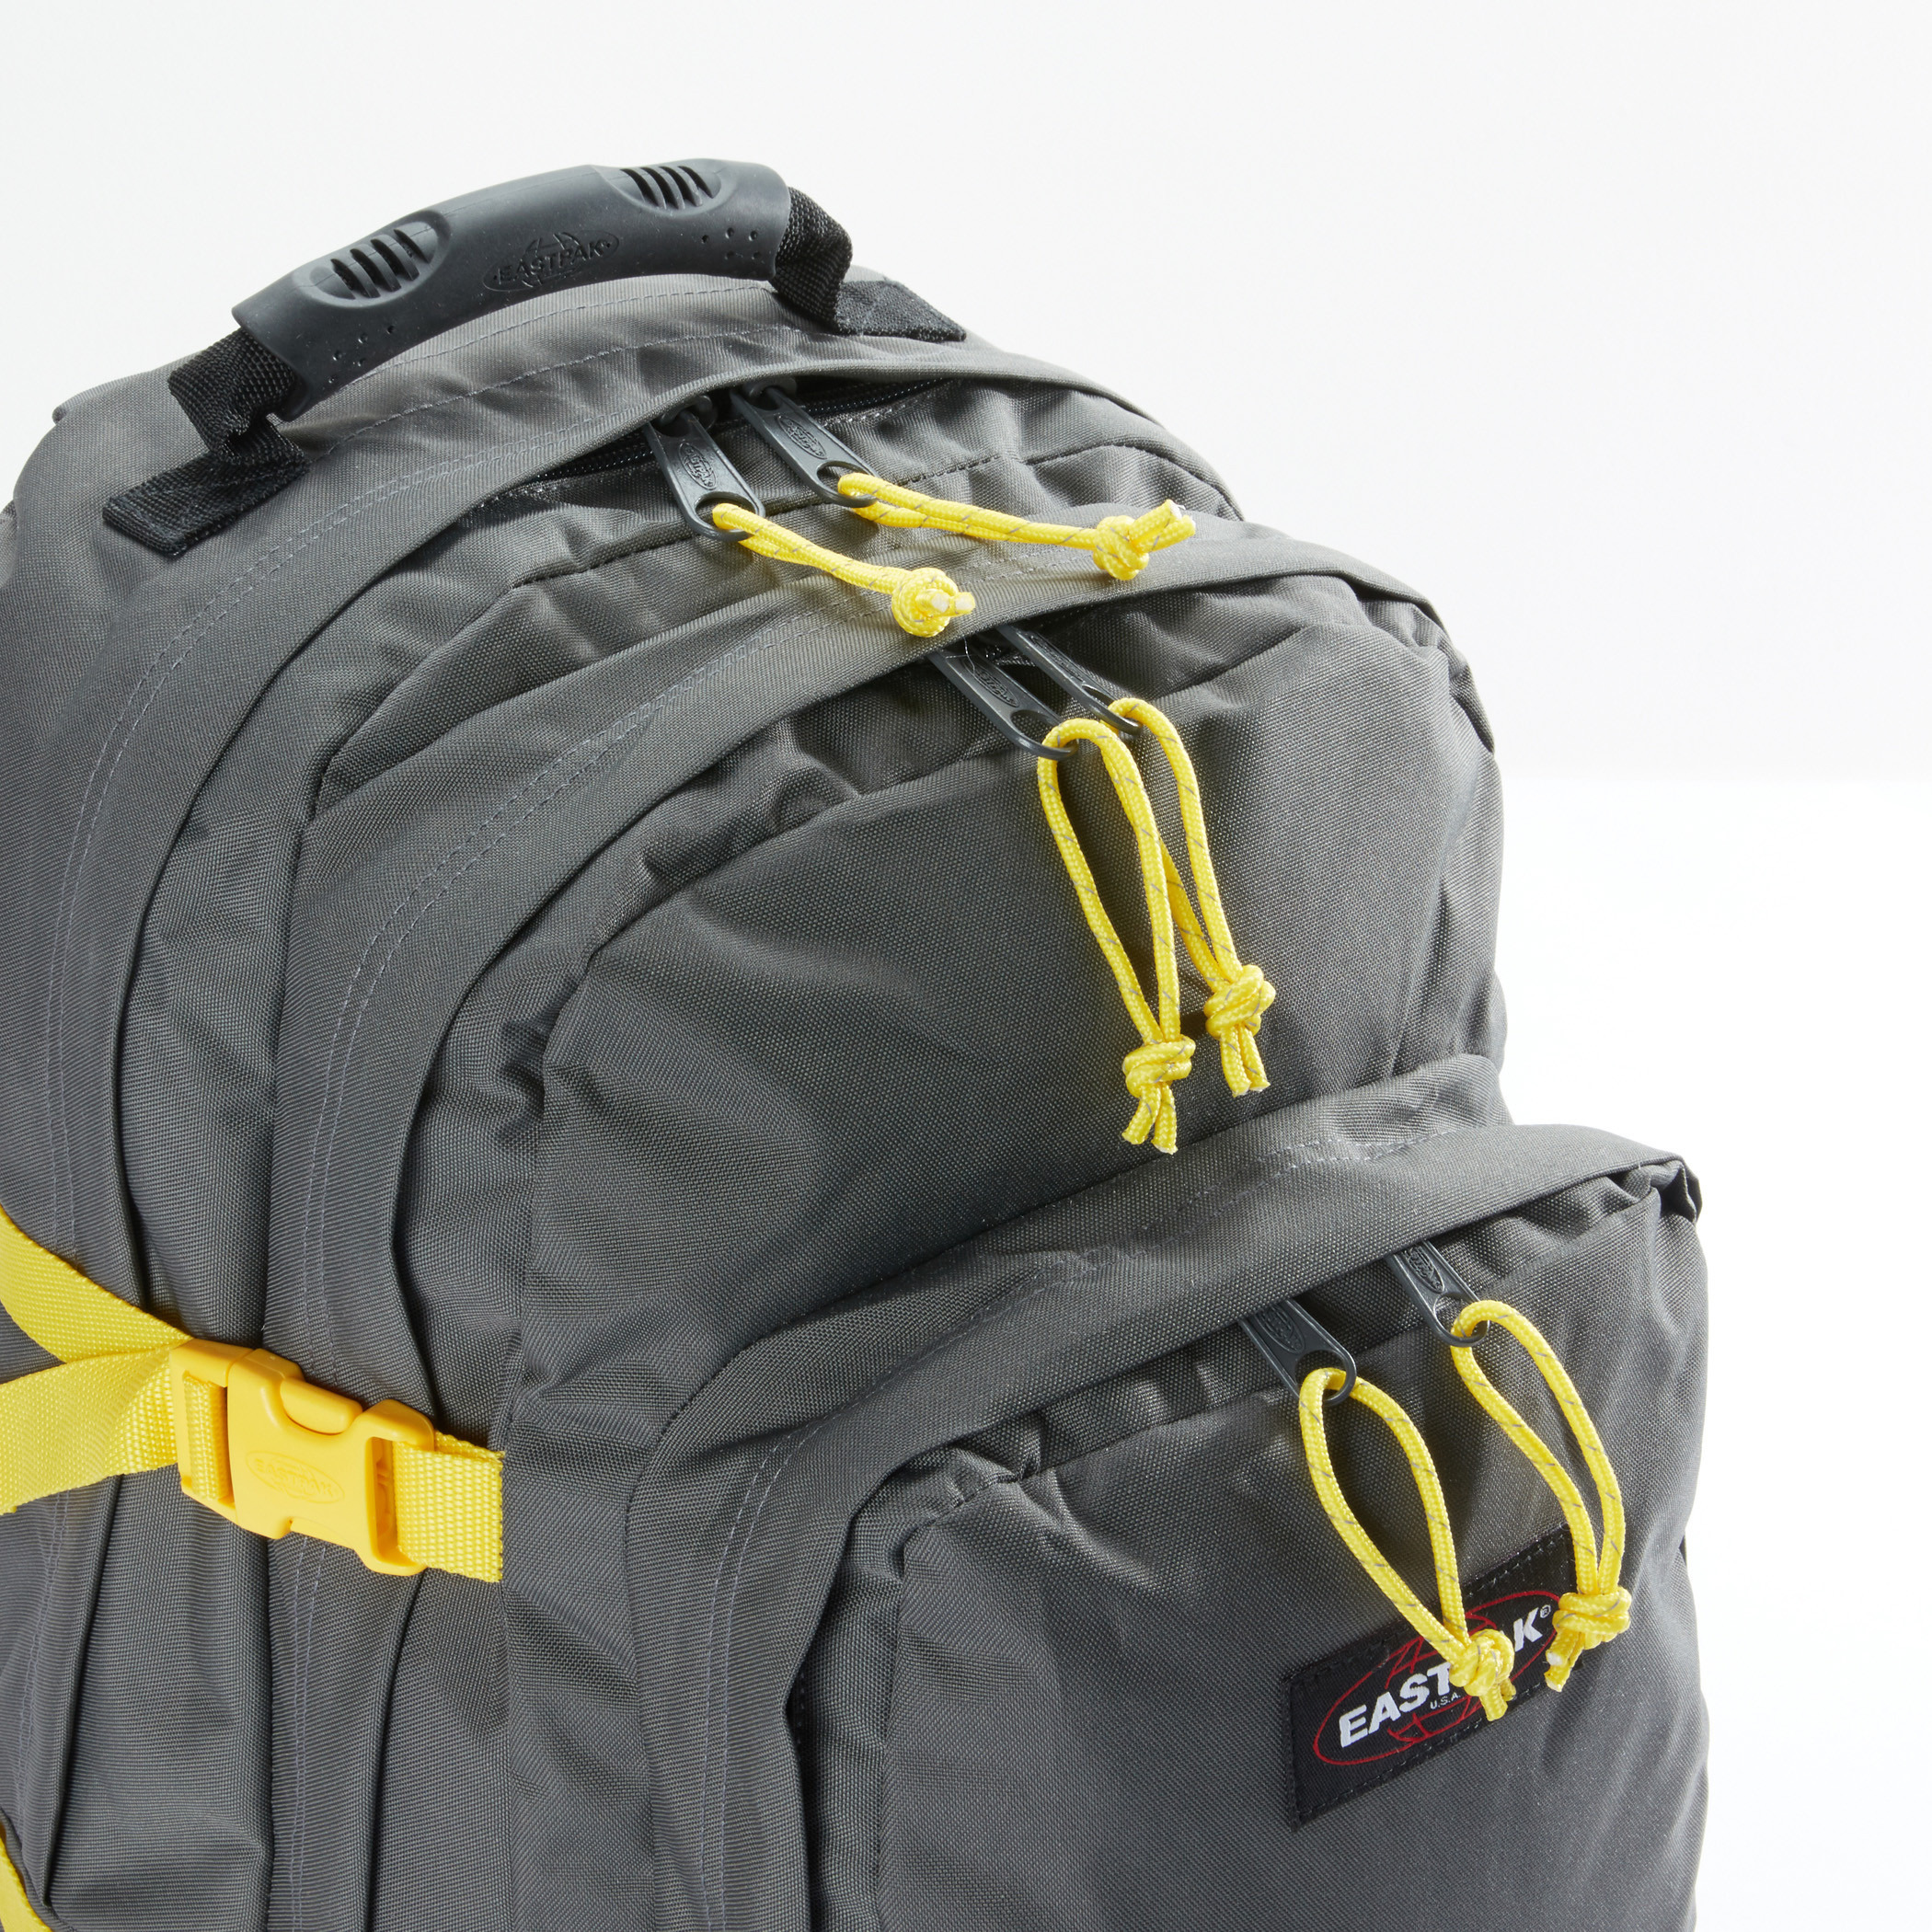 eastpak backpack Bag Men Brand New | eBay